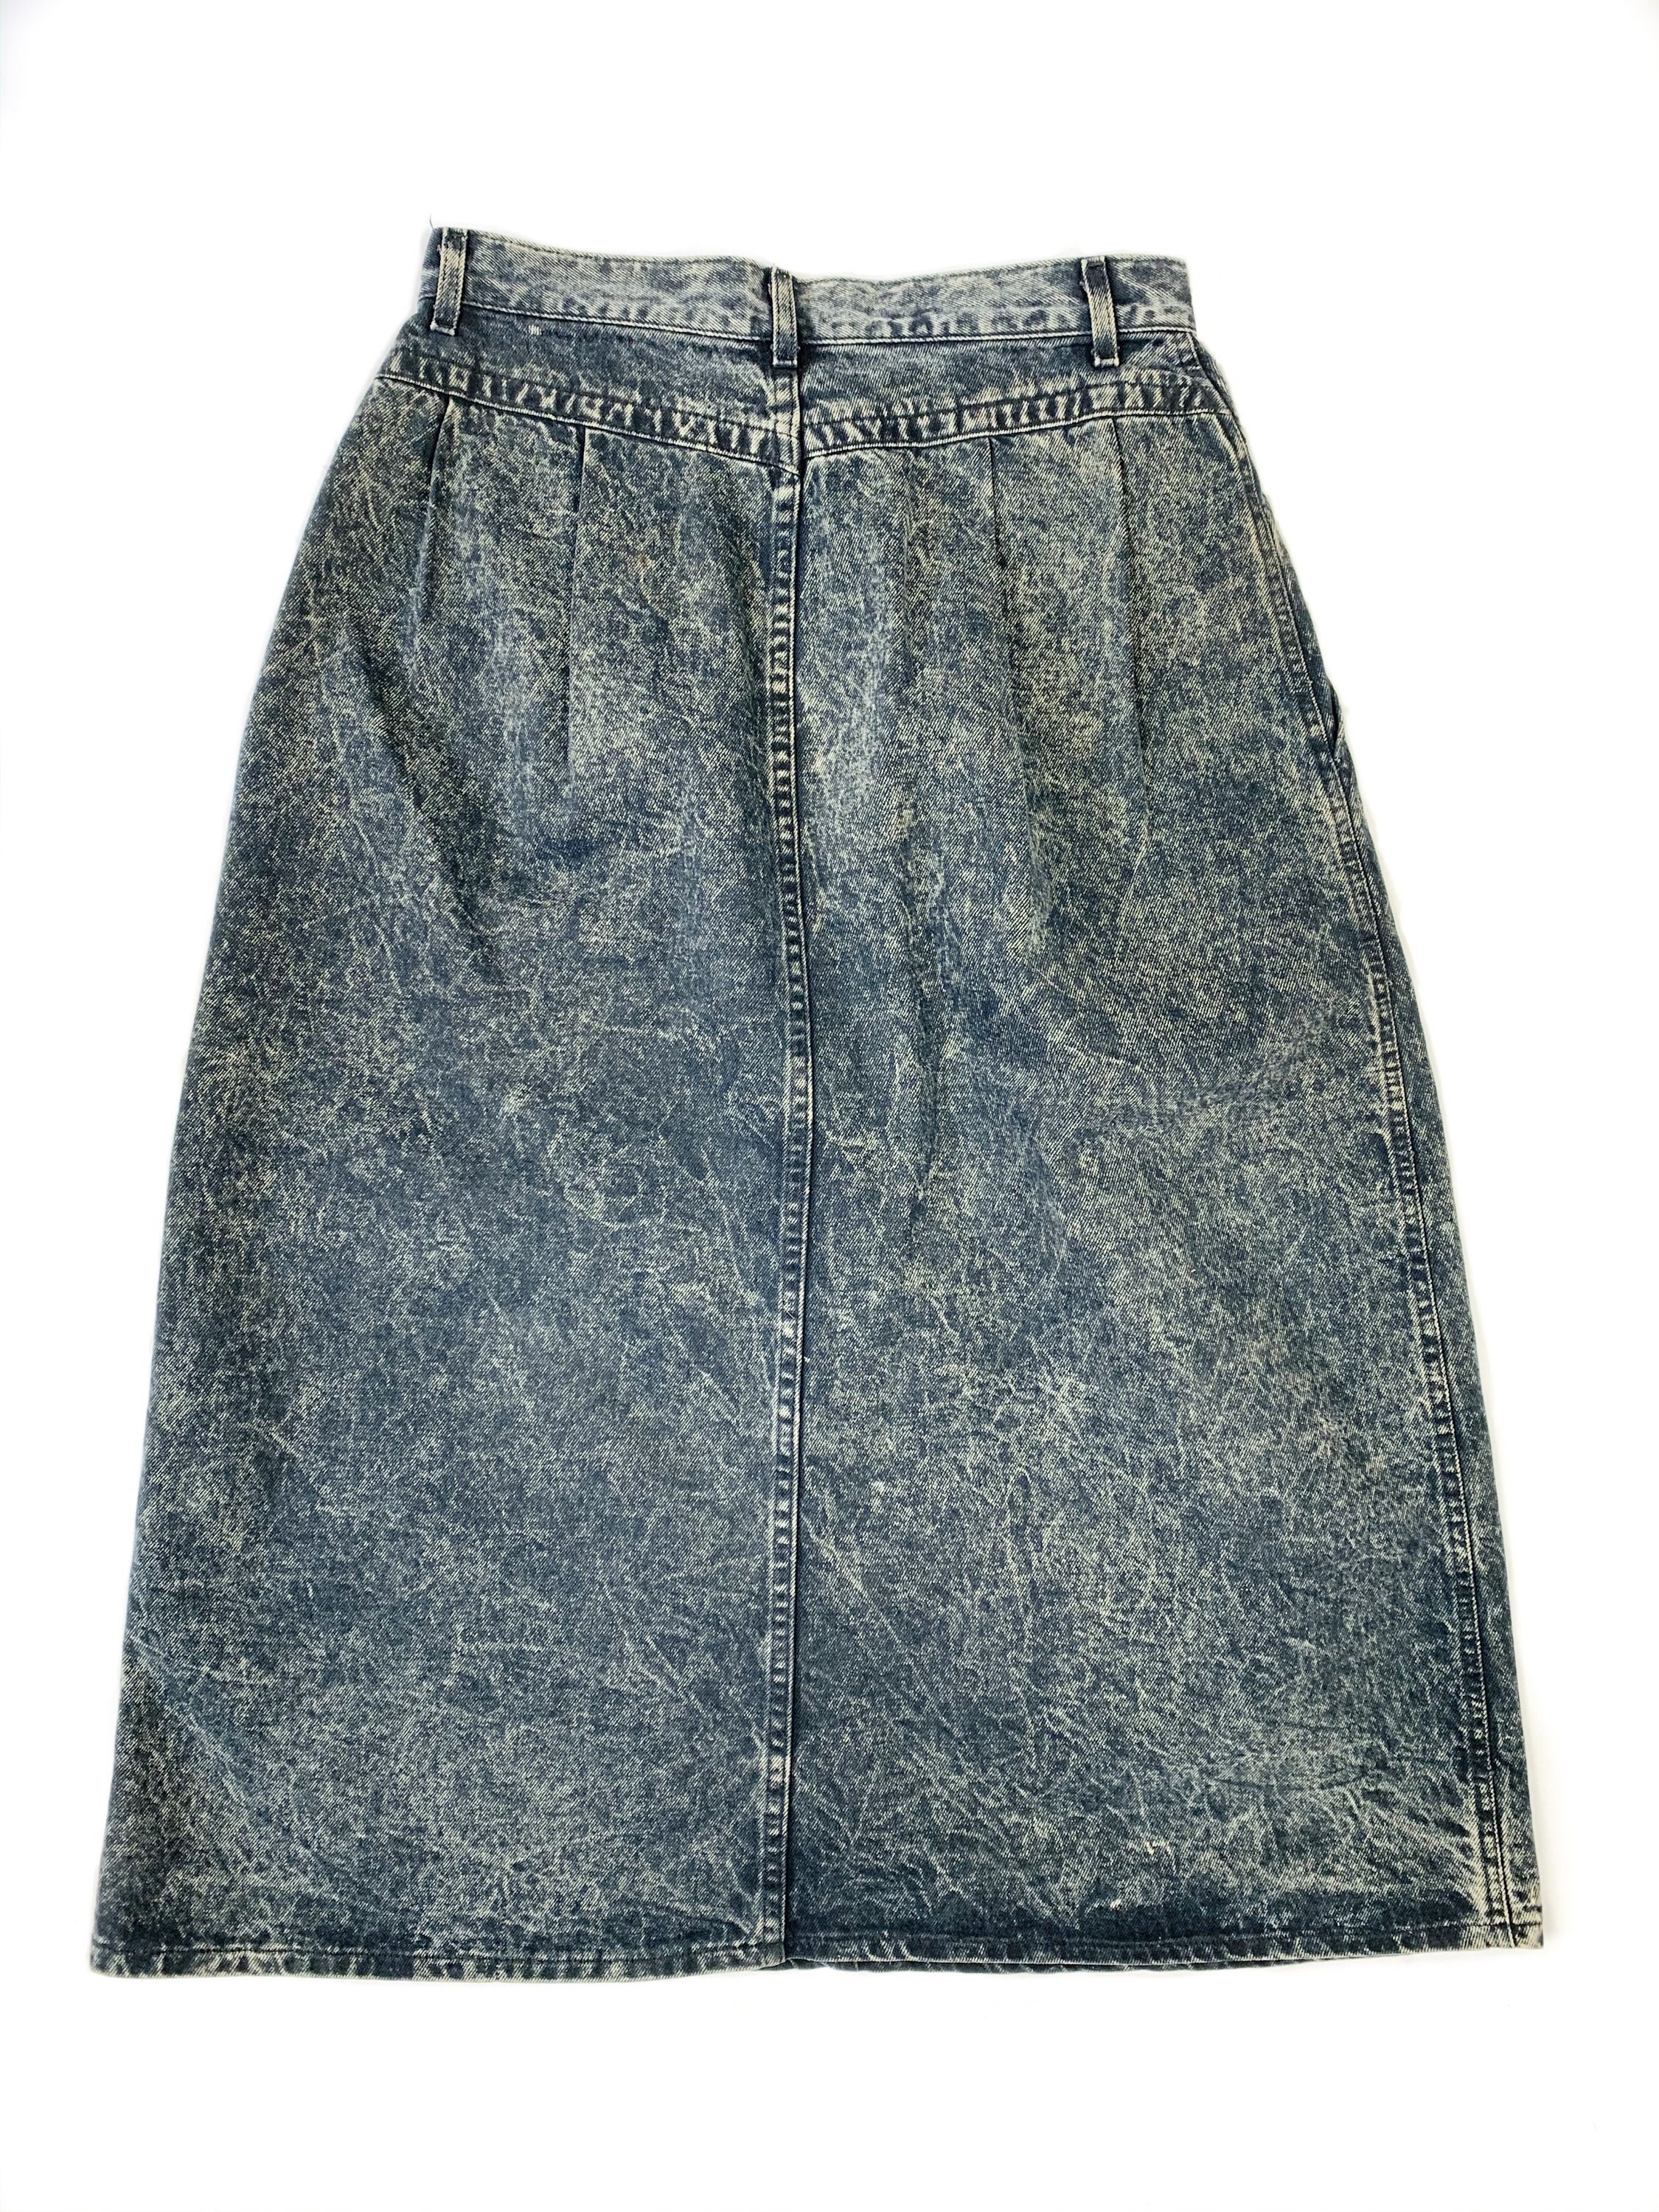 Vintage 1980s Lee Denim Acid Wash Skirt Size 14 - Etsy